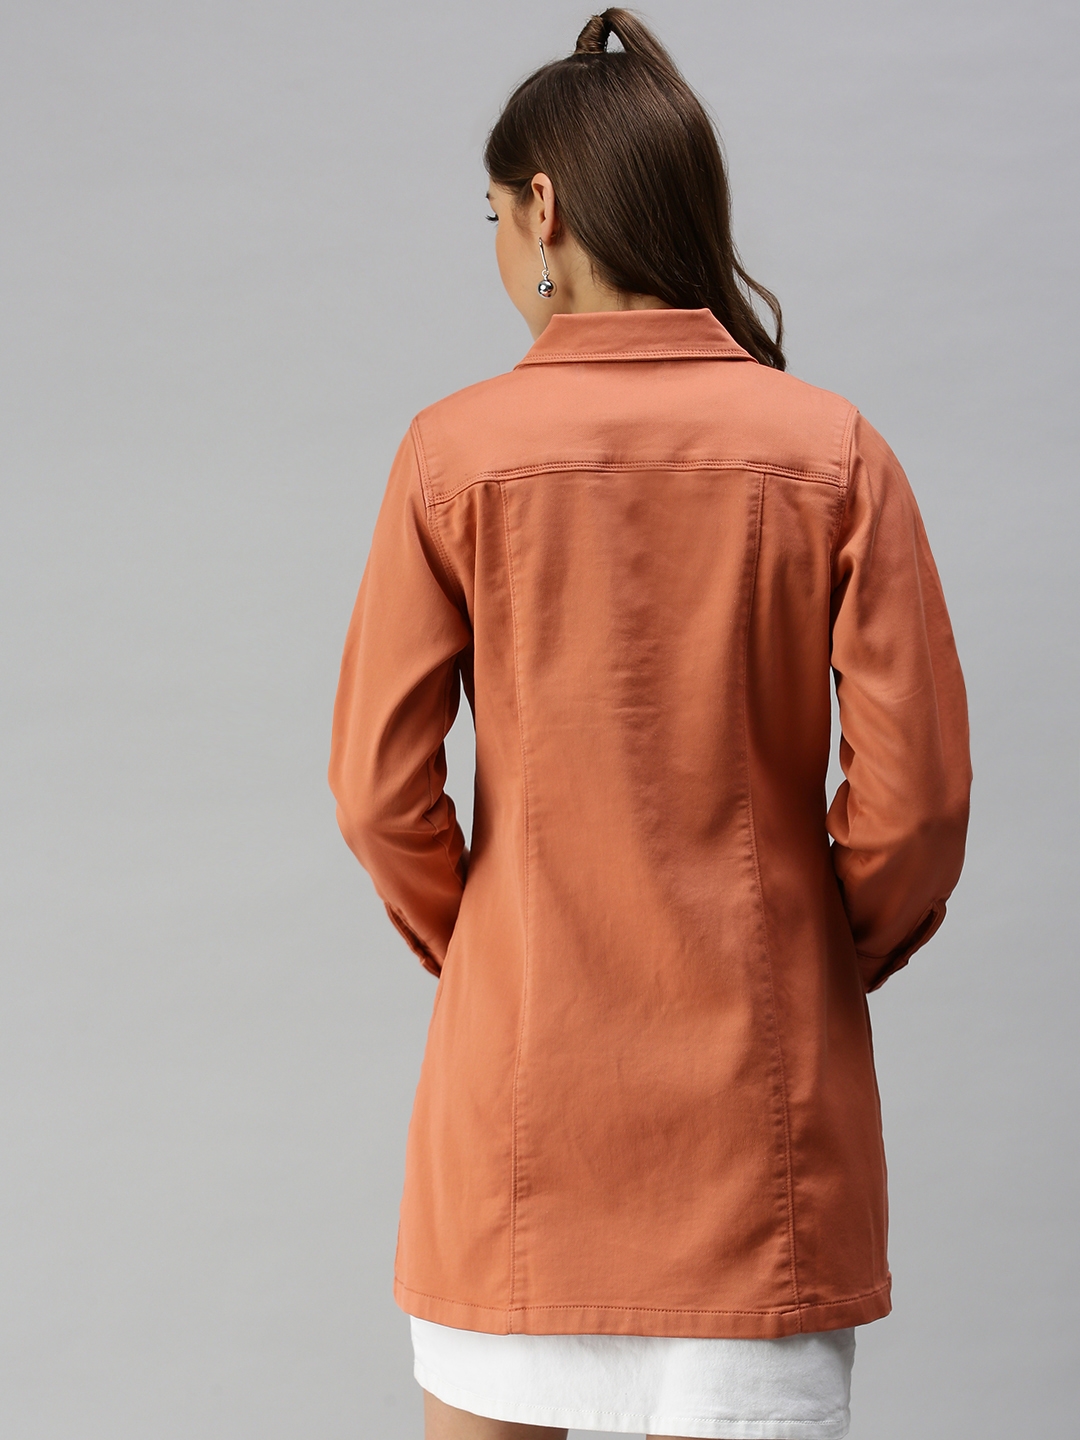 Women's Orange Denim Solid Denim Jackets